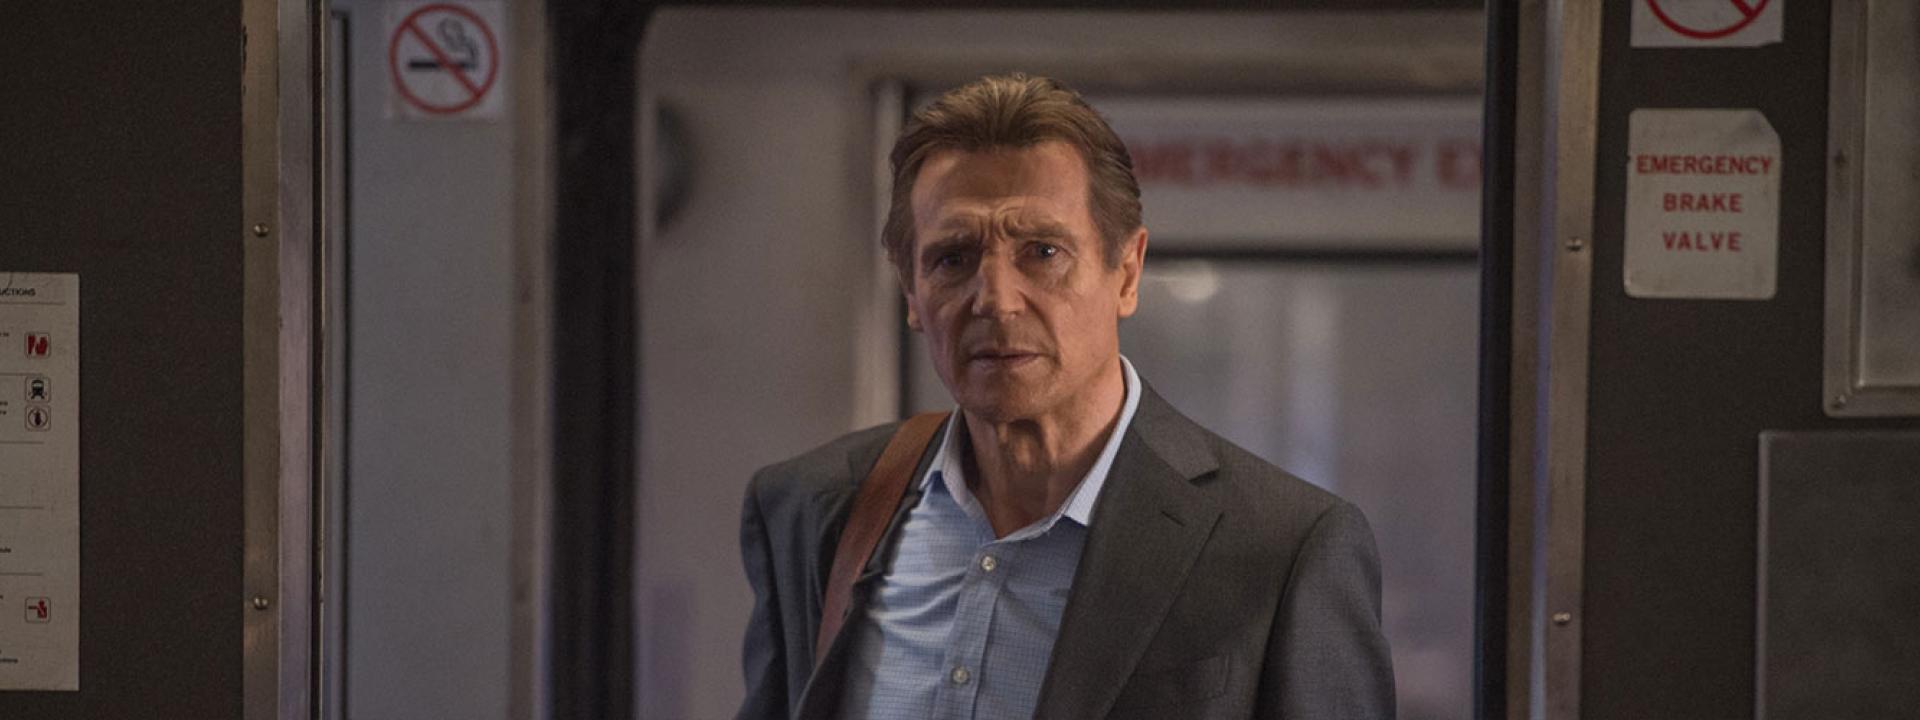 CRÍTICA | O Passageiro, o "novo" filme de Liam Neeson